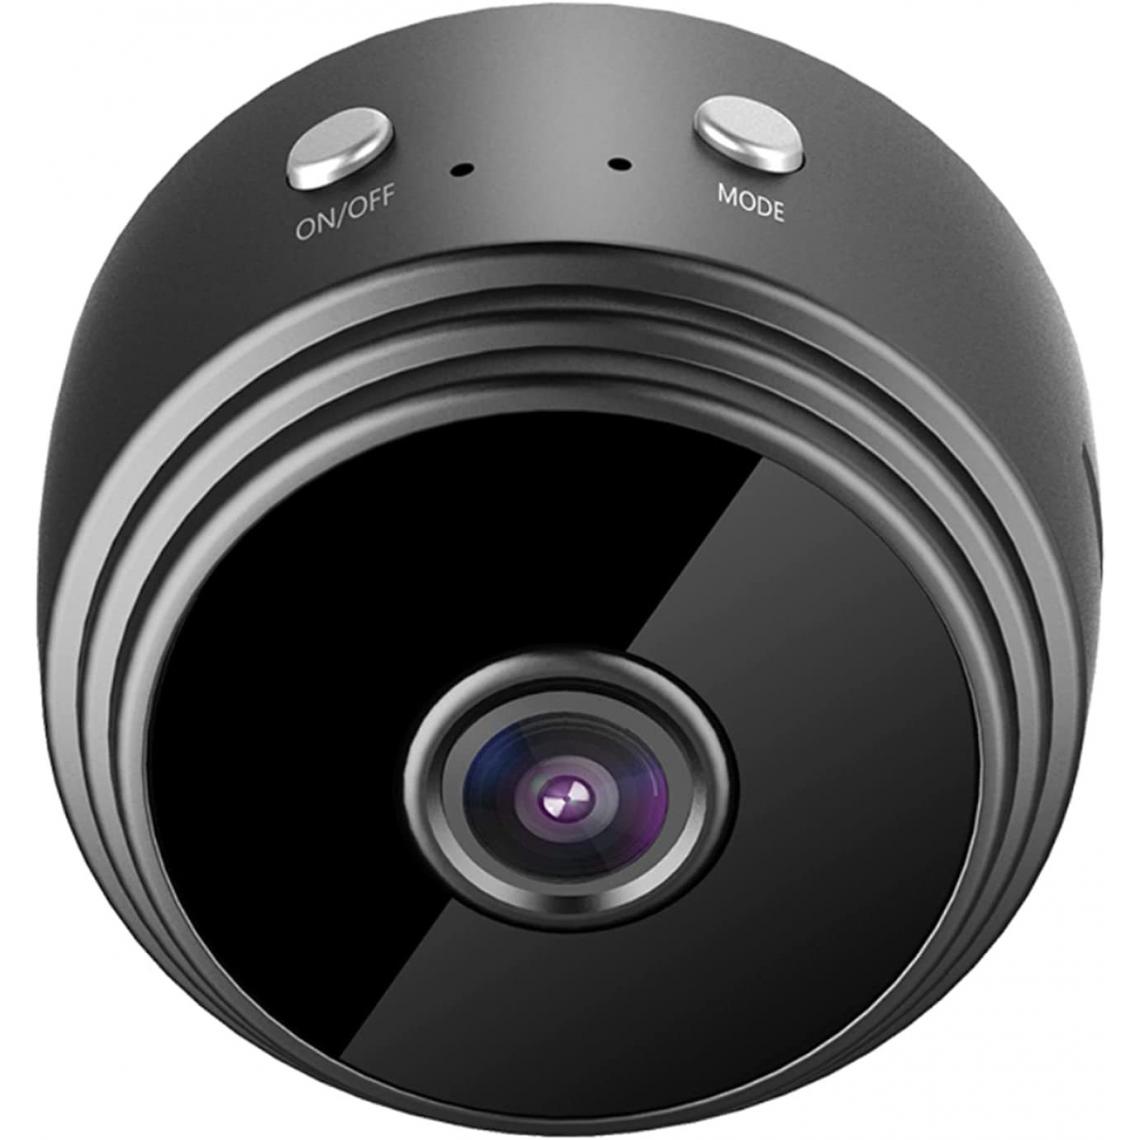 Chrono - Mini caméra de surveillance extérieure FHD 1080P WiFi - Petite caméra portable sans fil avec vision nocturne, détection de mouvement, vue à distance.(noir) - Autres accessoires smartphone